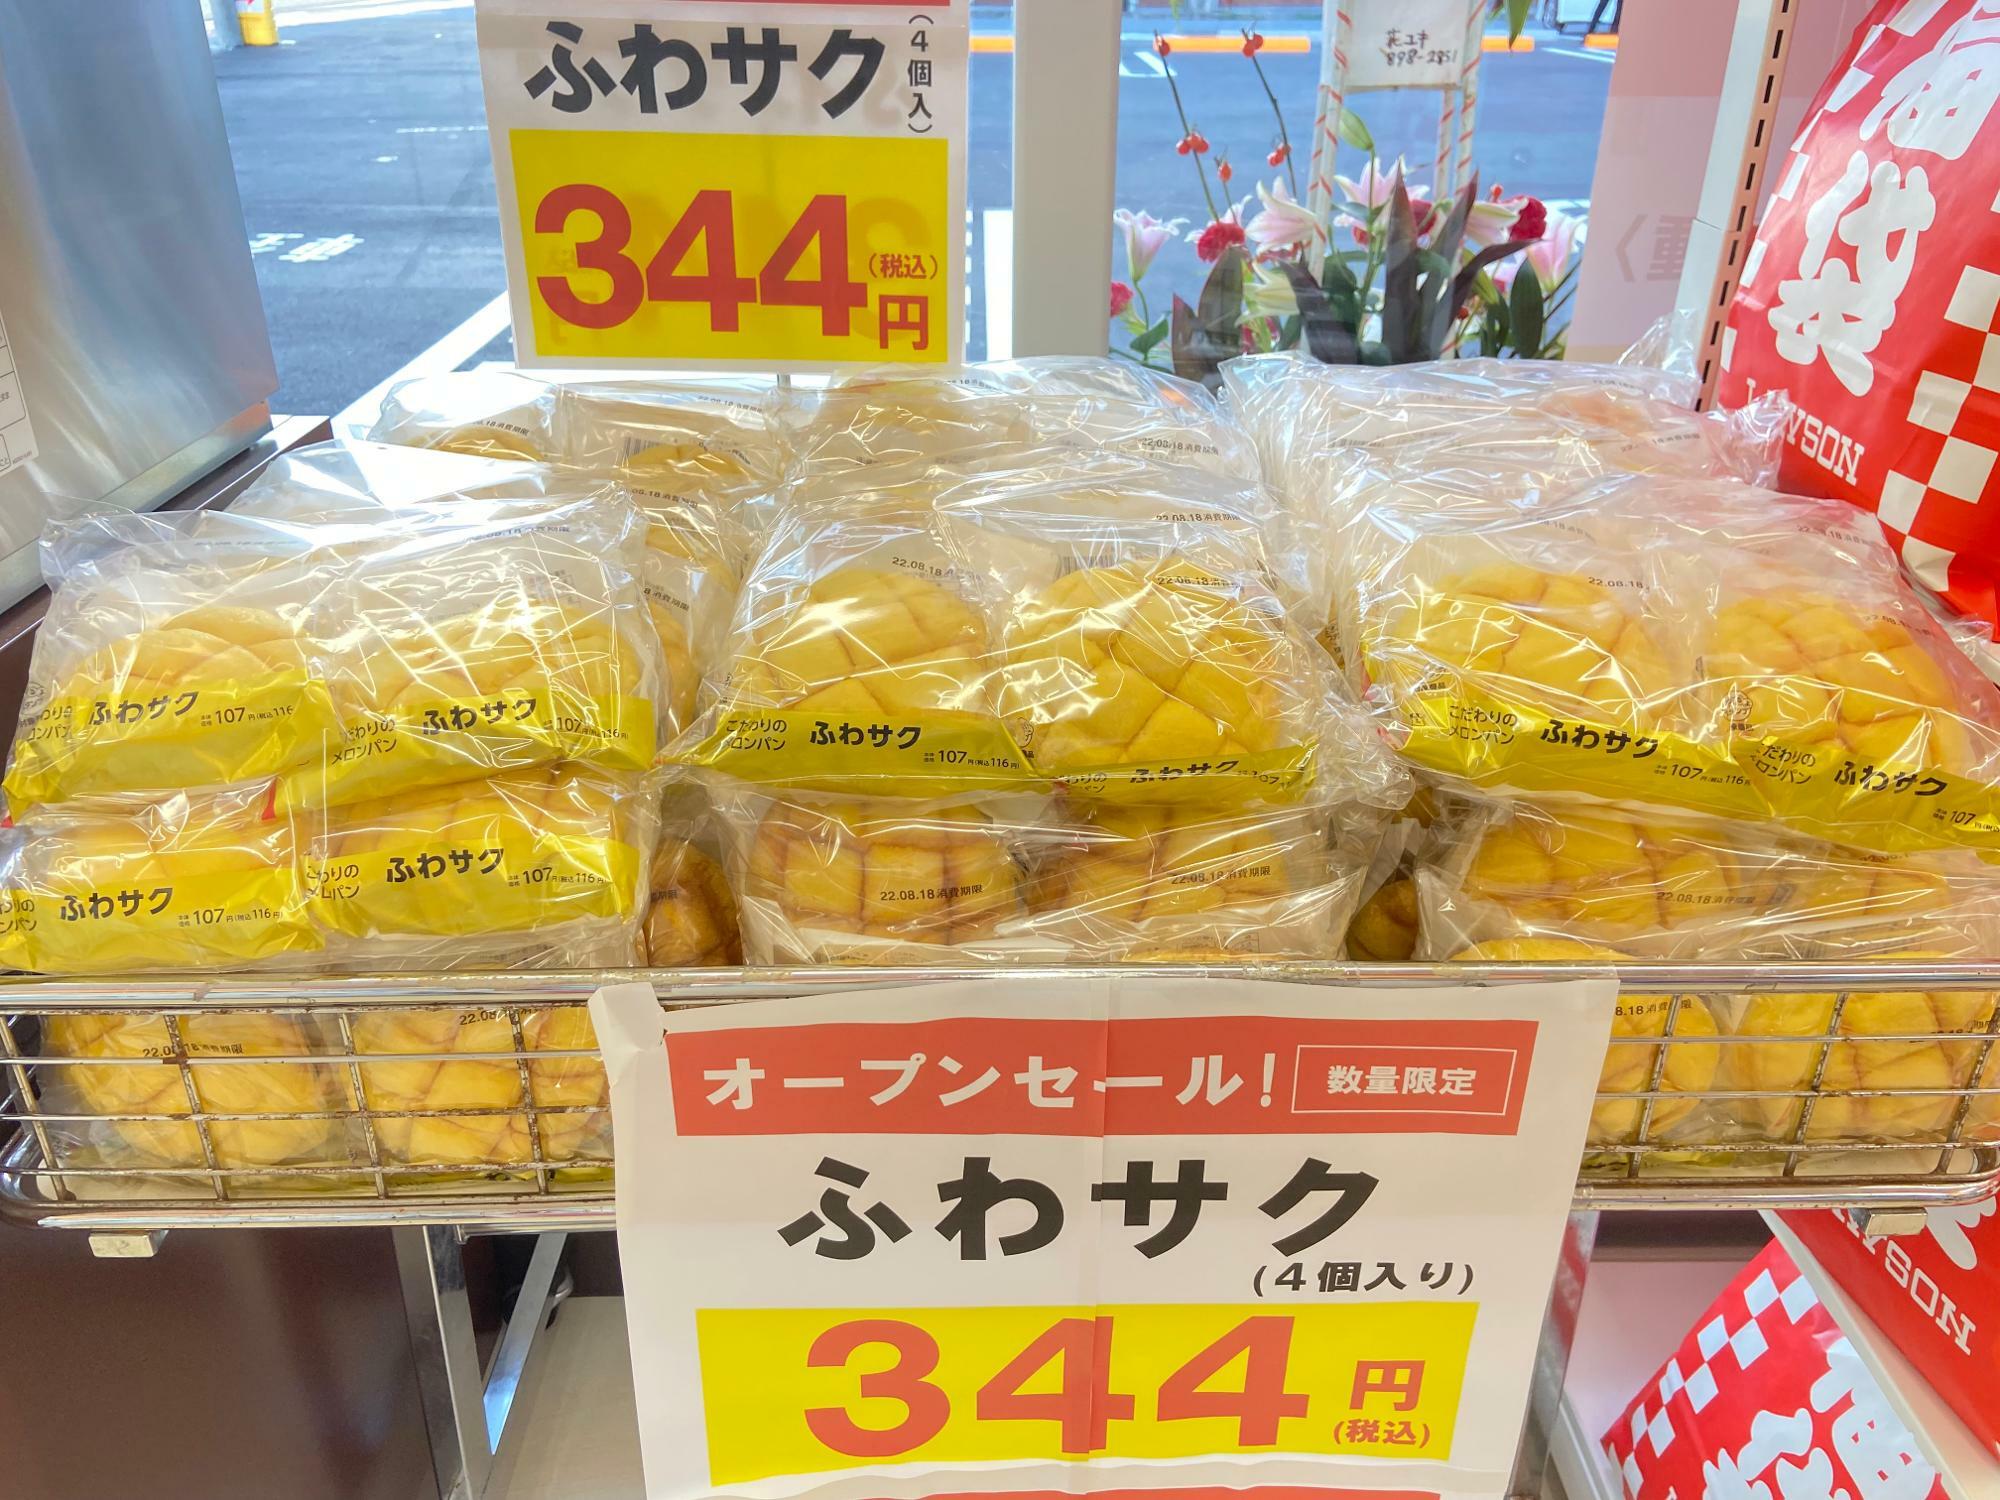 沖縄限定のふわサクメロンパンは4個で344円